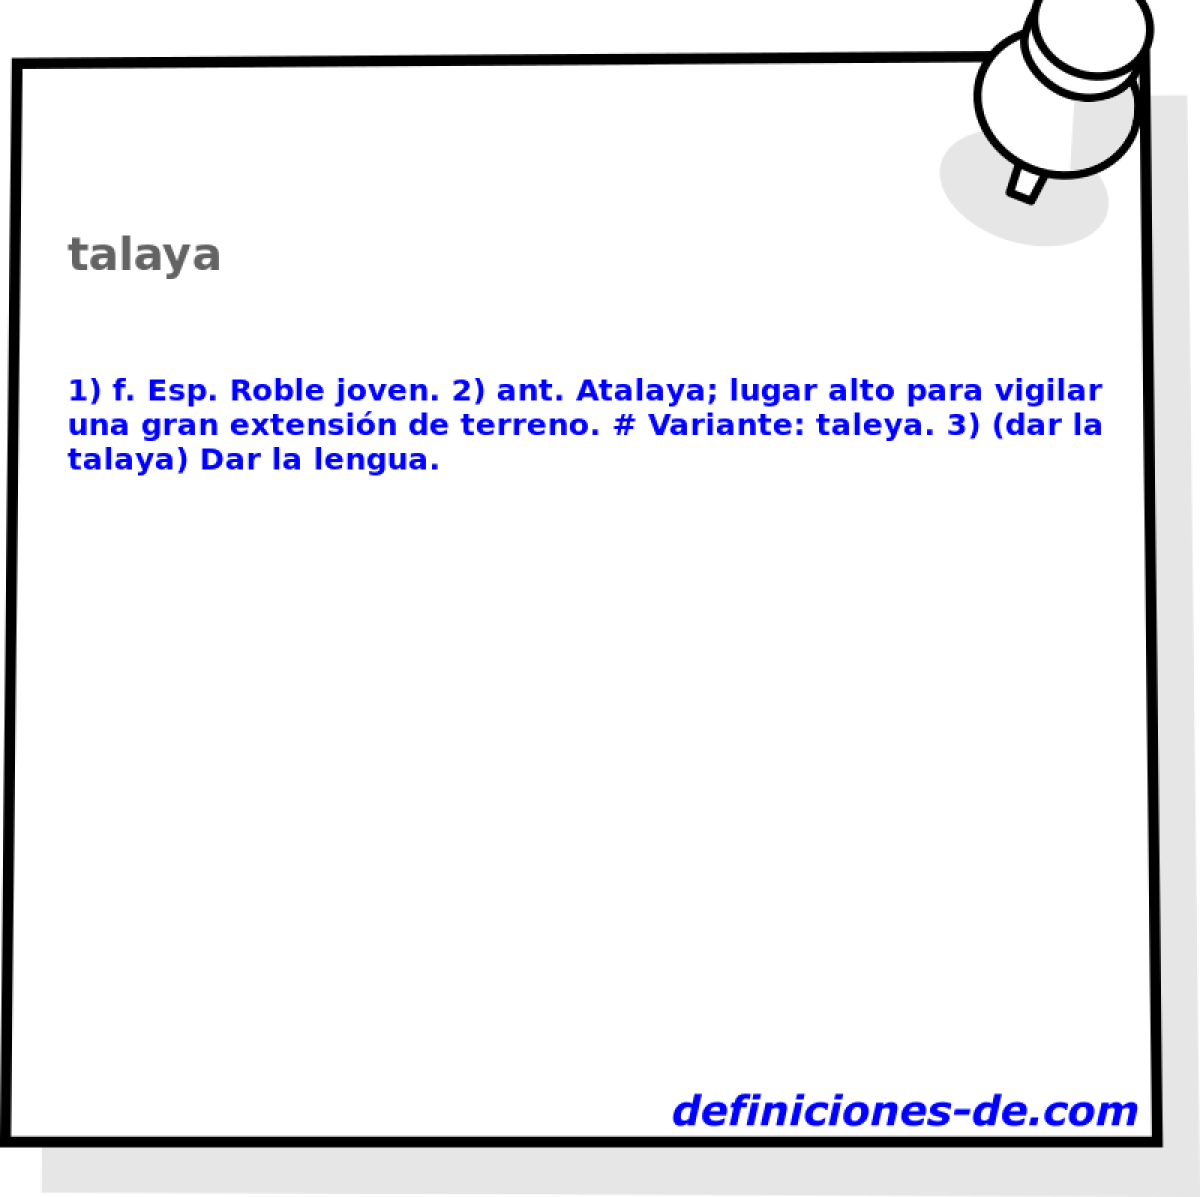 talaya 